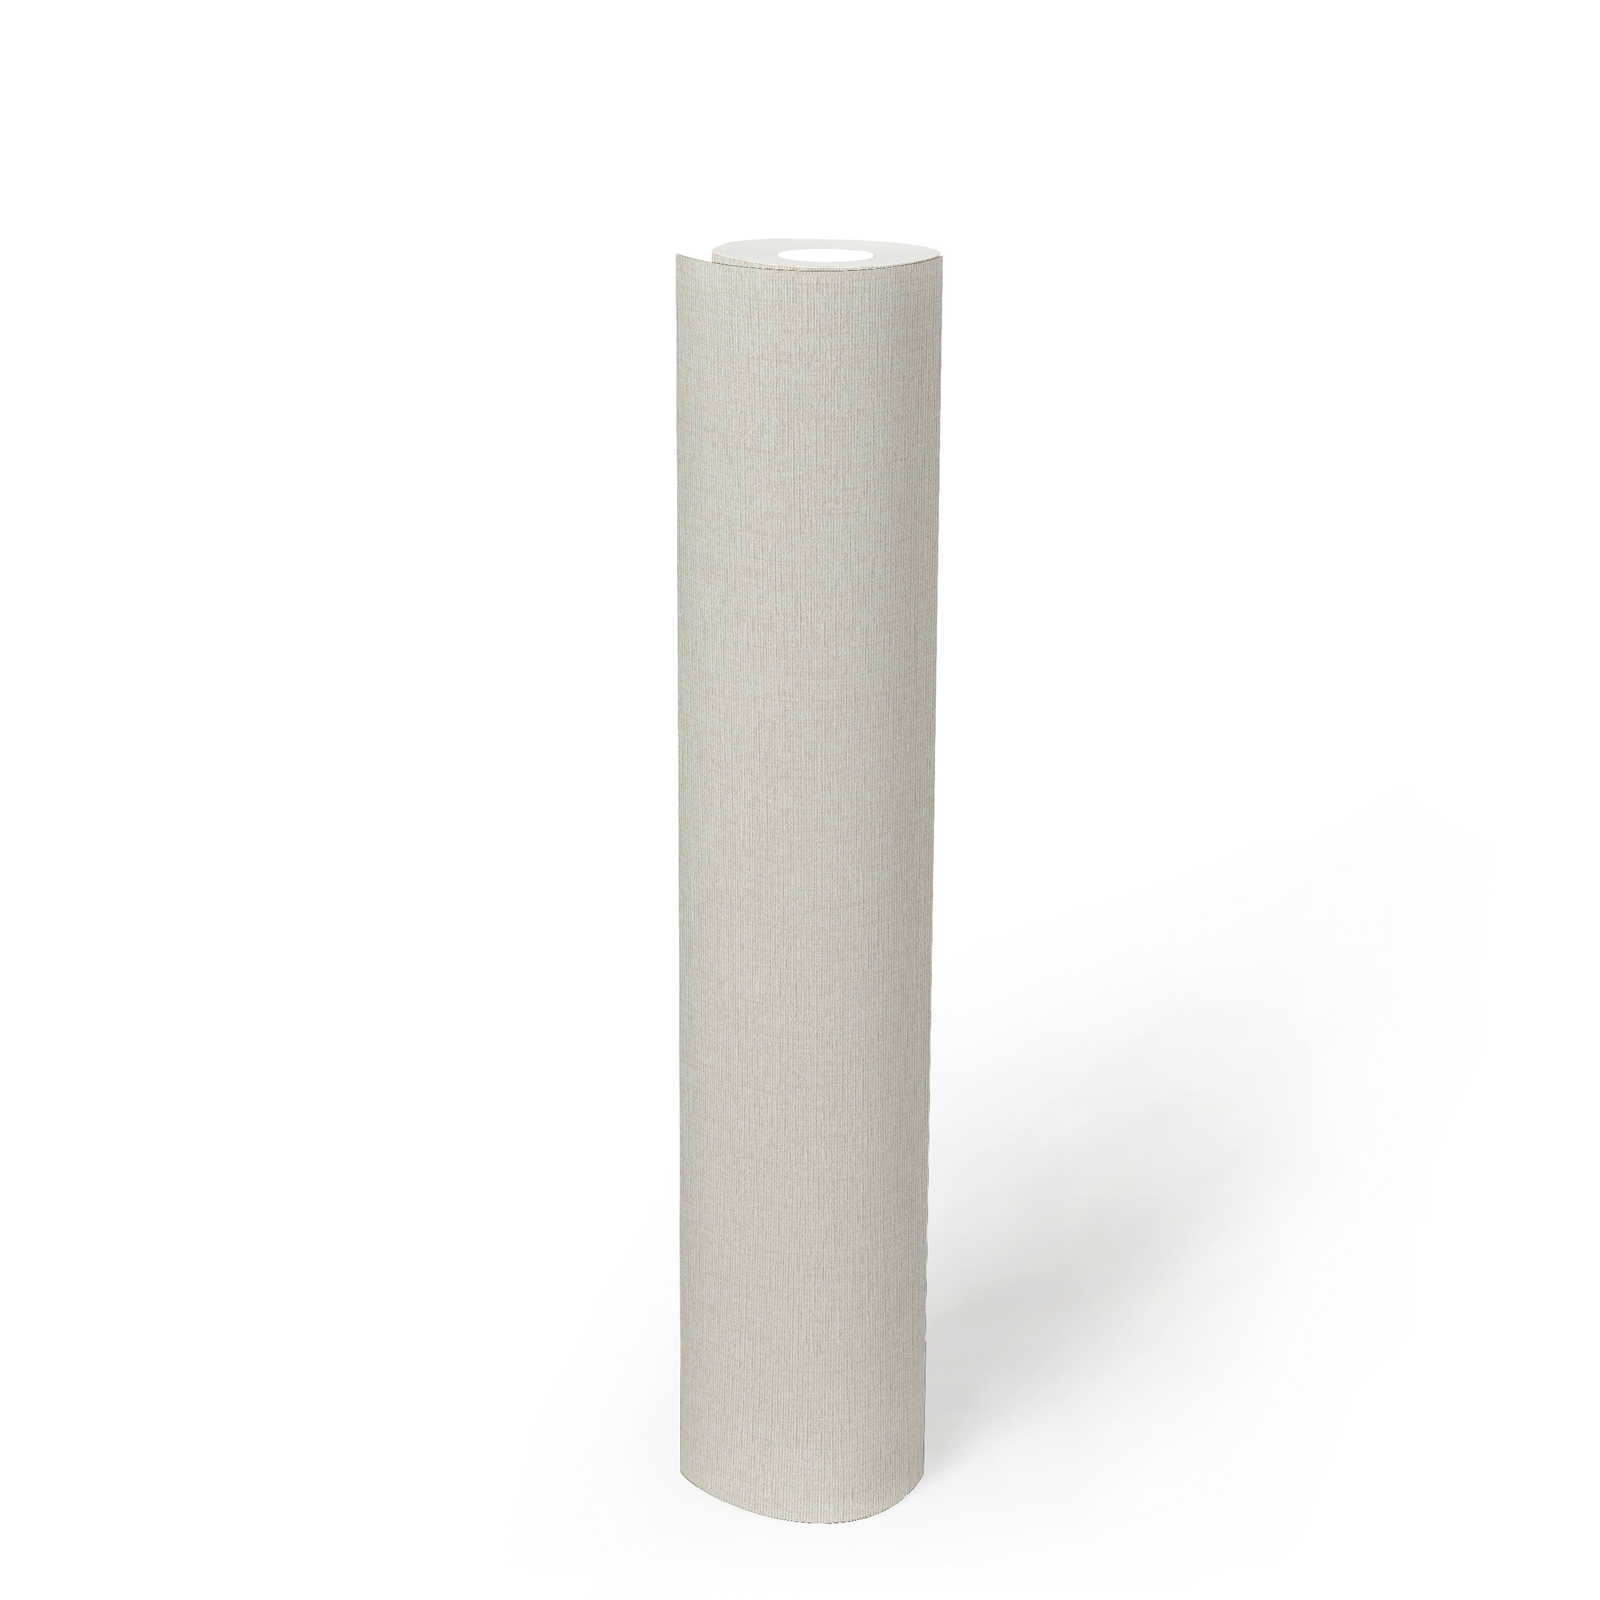             papier peint en papier intissé uni à motif structuré, mat - crème, blanc
        